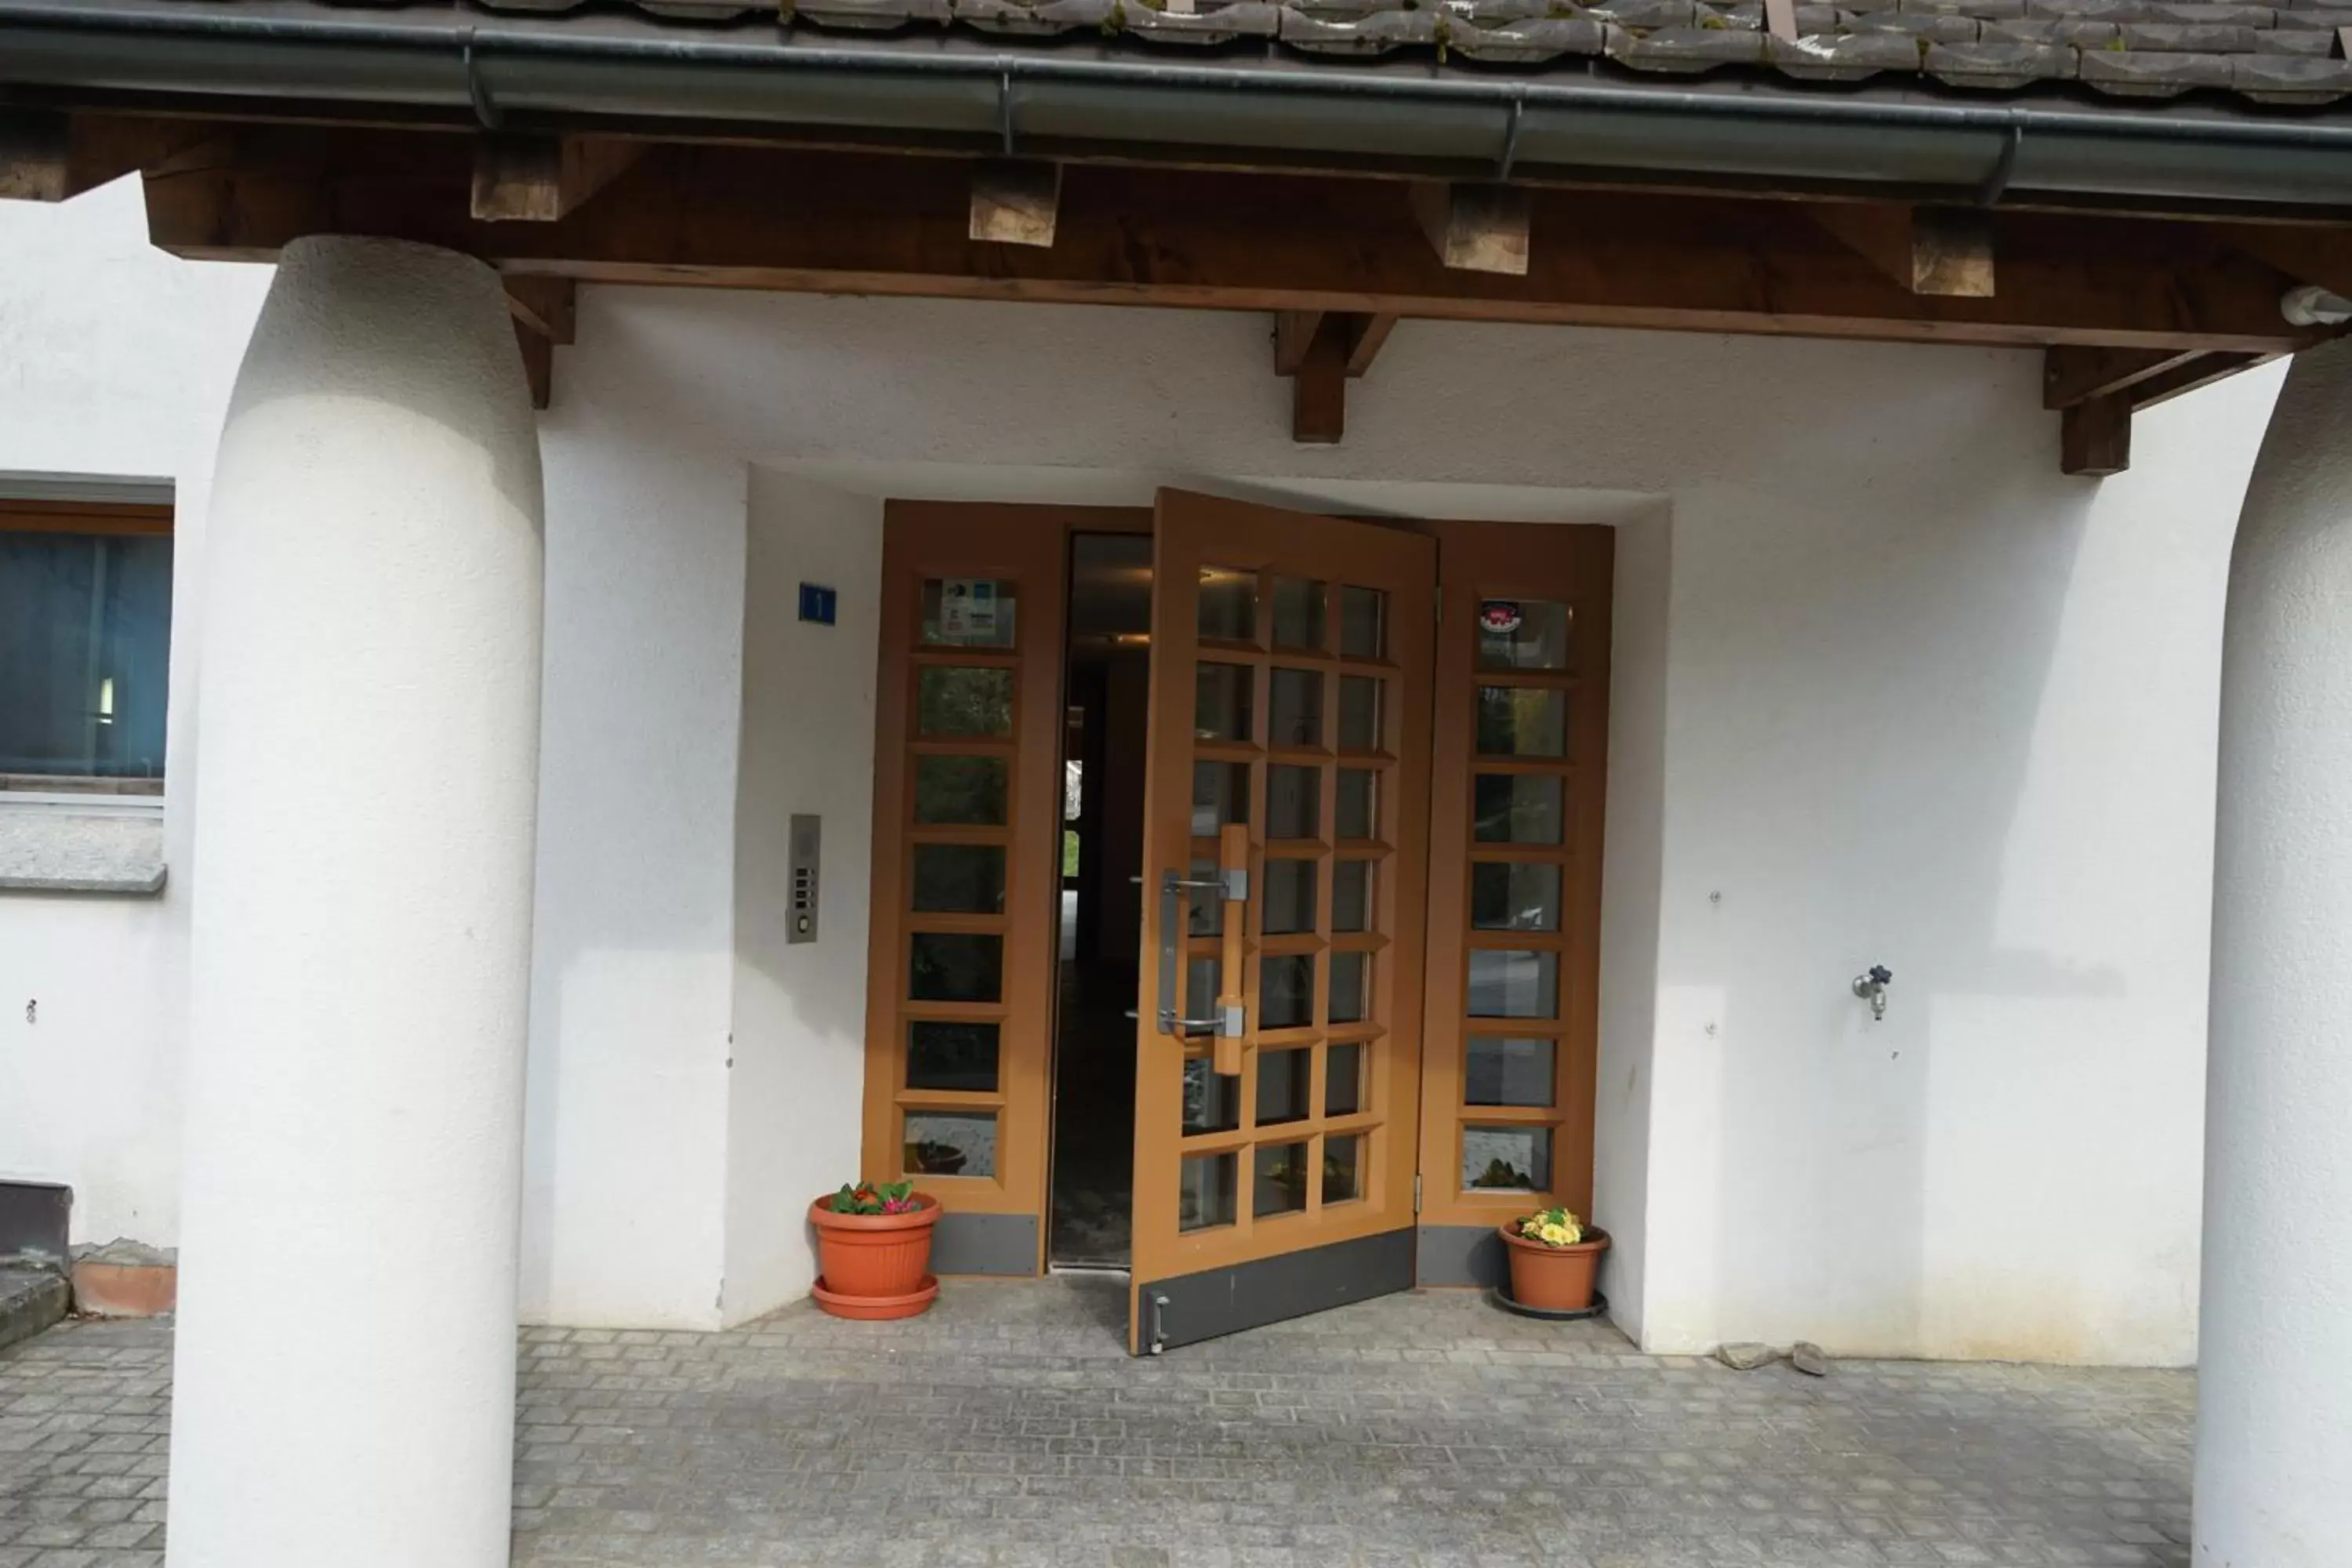 Facade/entrance in Hotel Schiffahrt